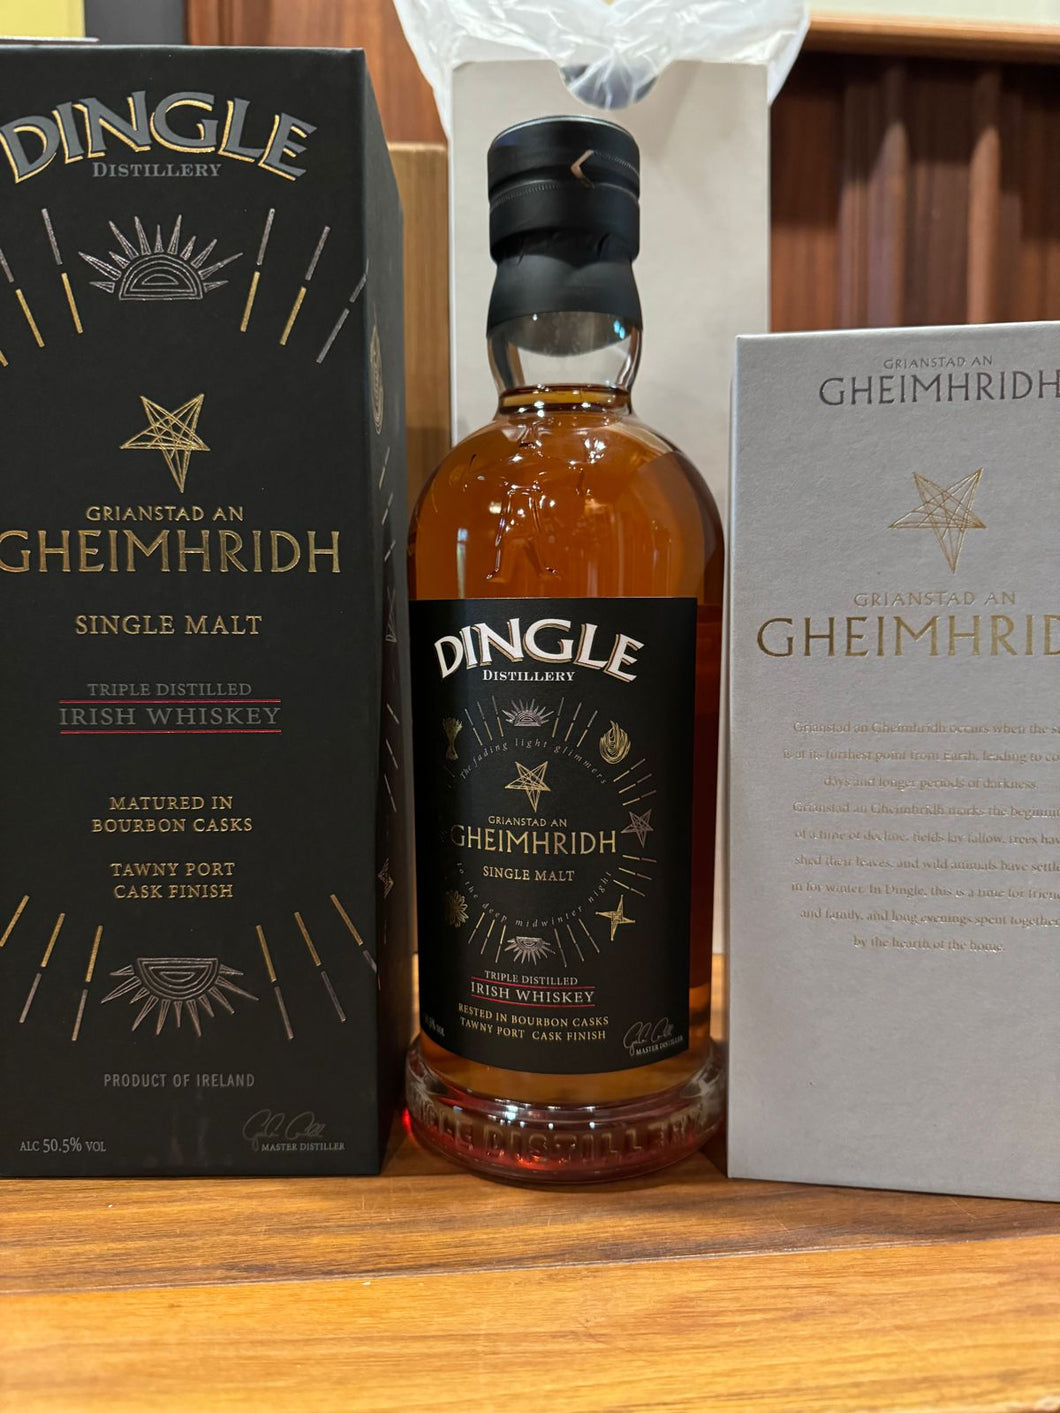 Dingle Grainstad an Gheimhridh Single Malt Irish Whiskey 750ml